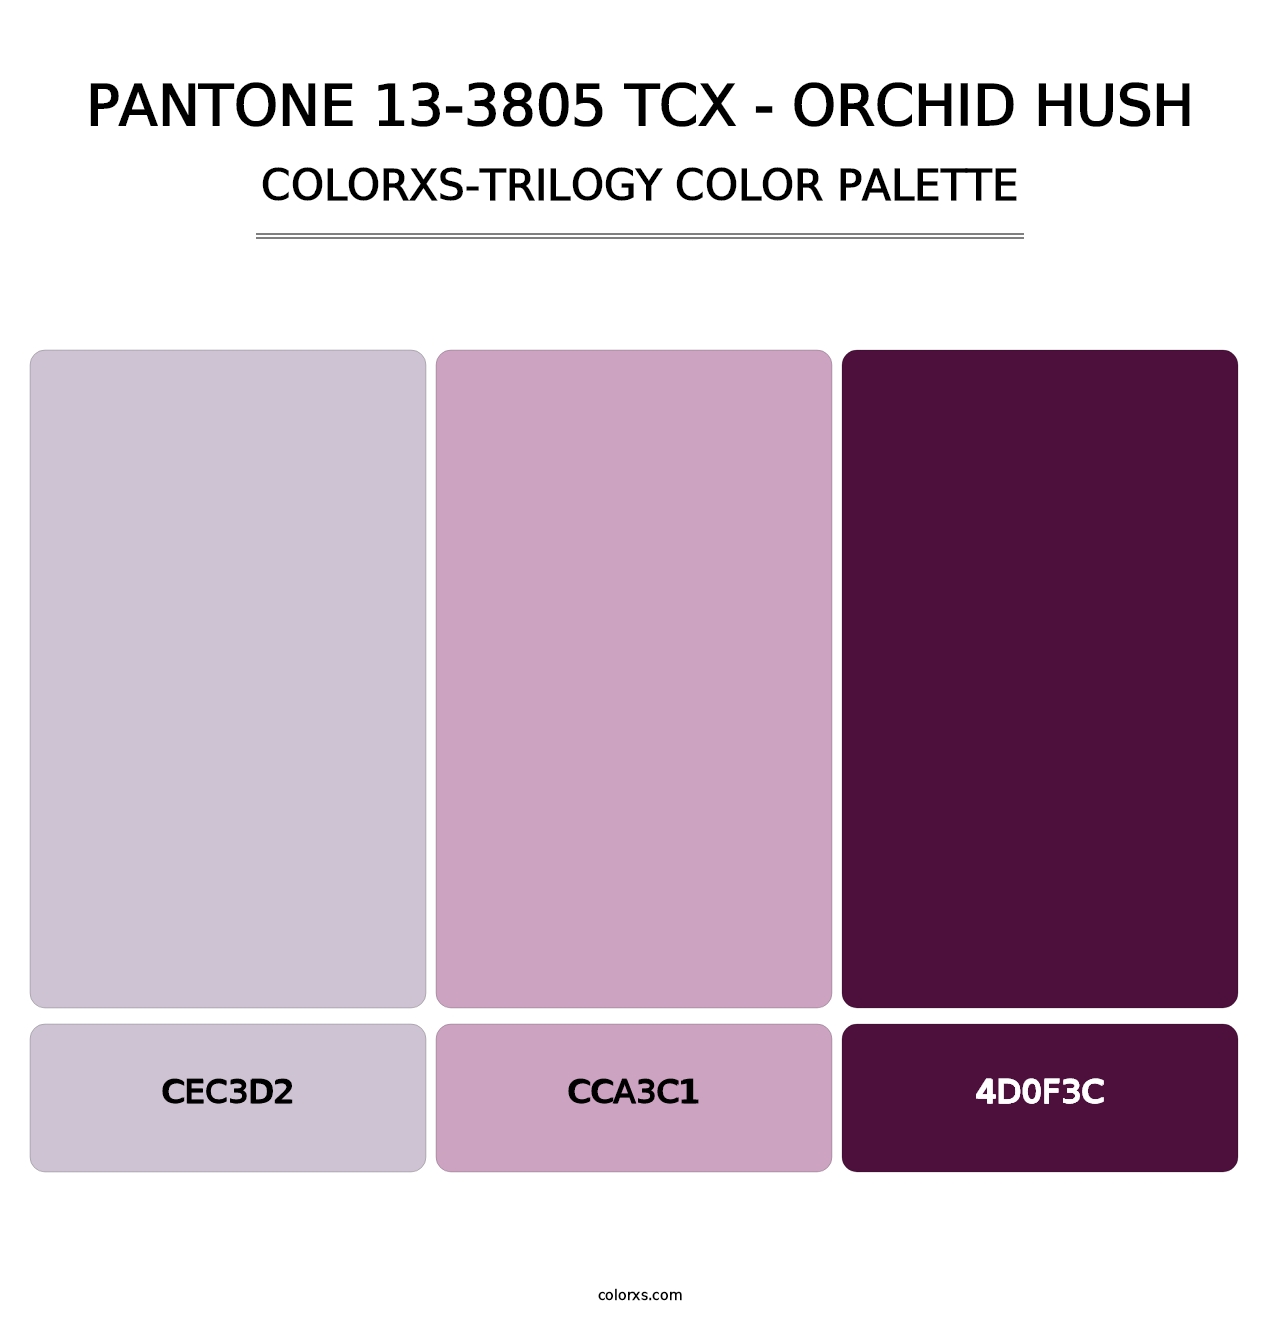 PANTONE 13-3805 TCX - Orchid Hush - Colorxs Trilogy Palette